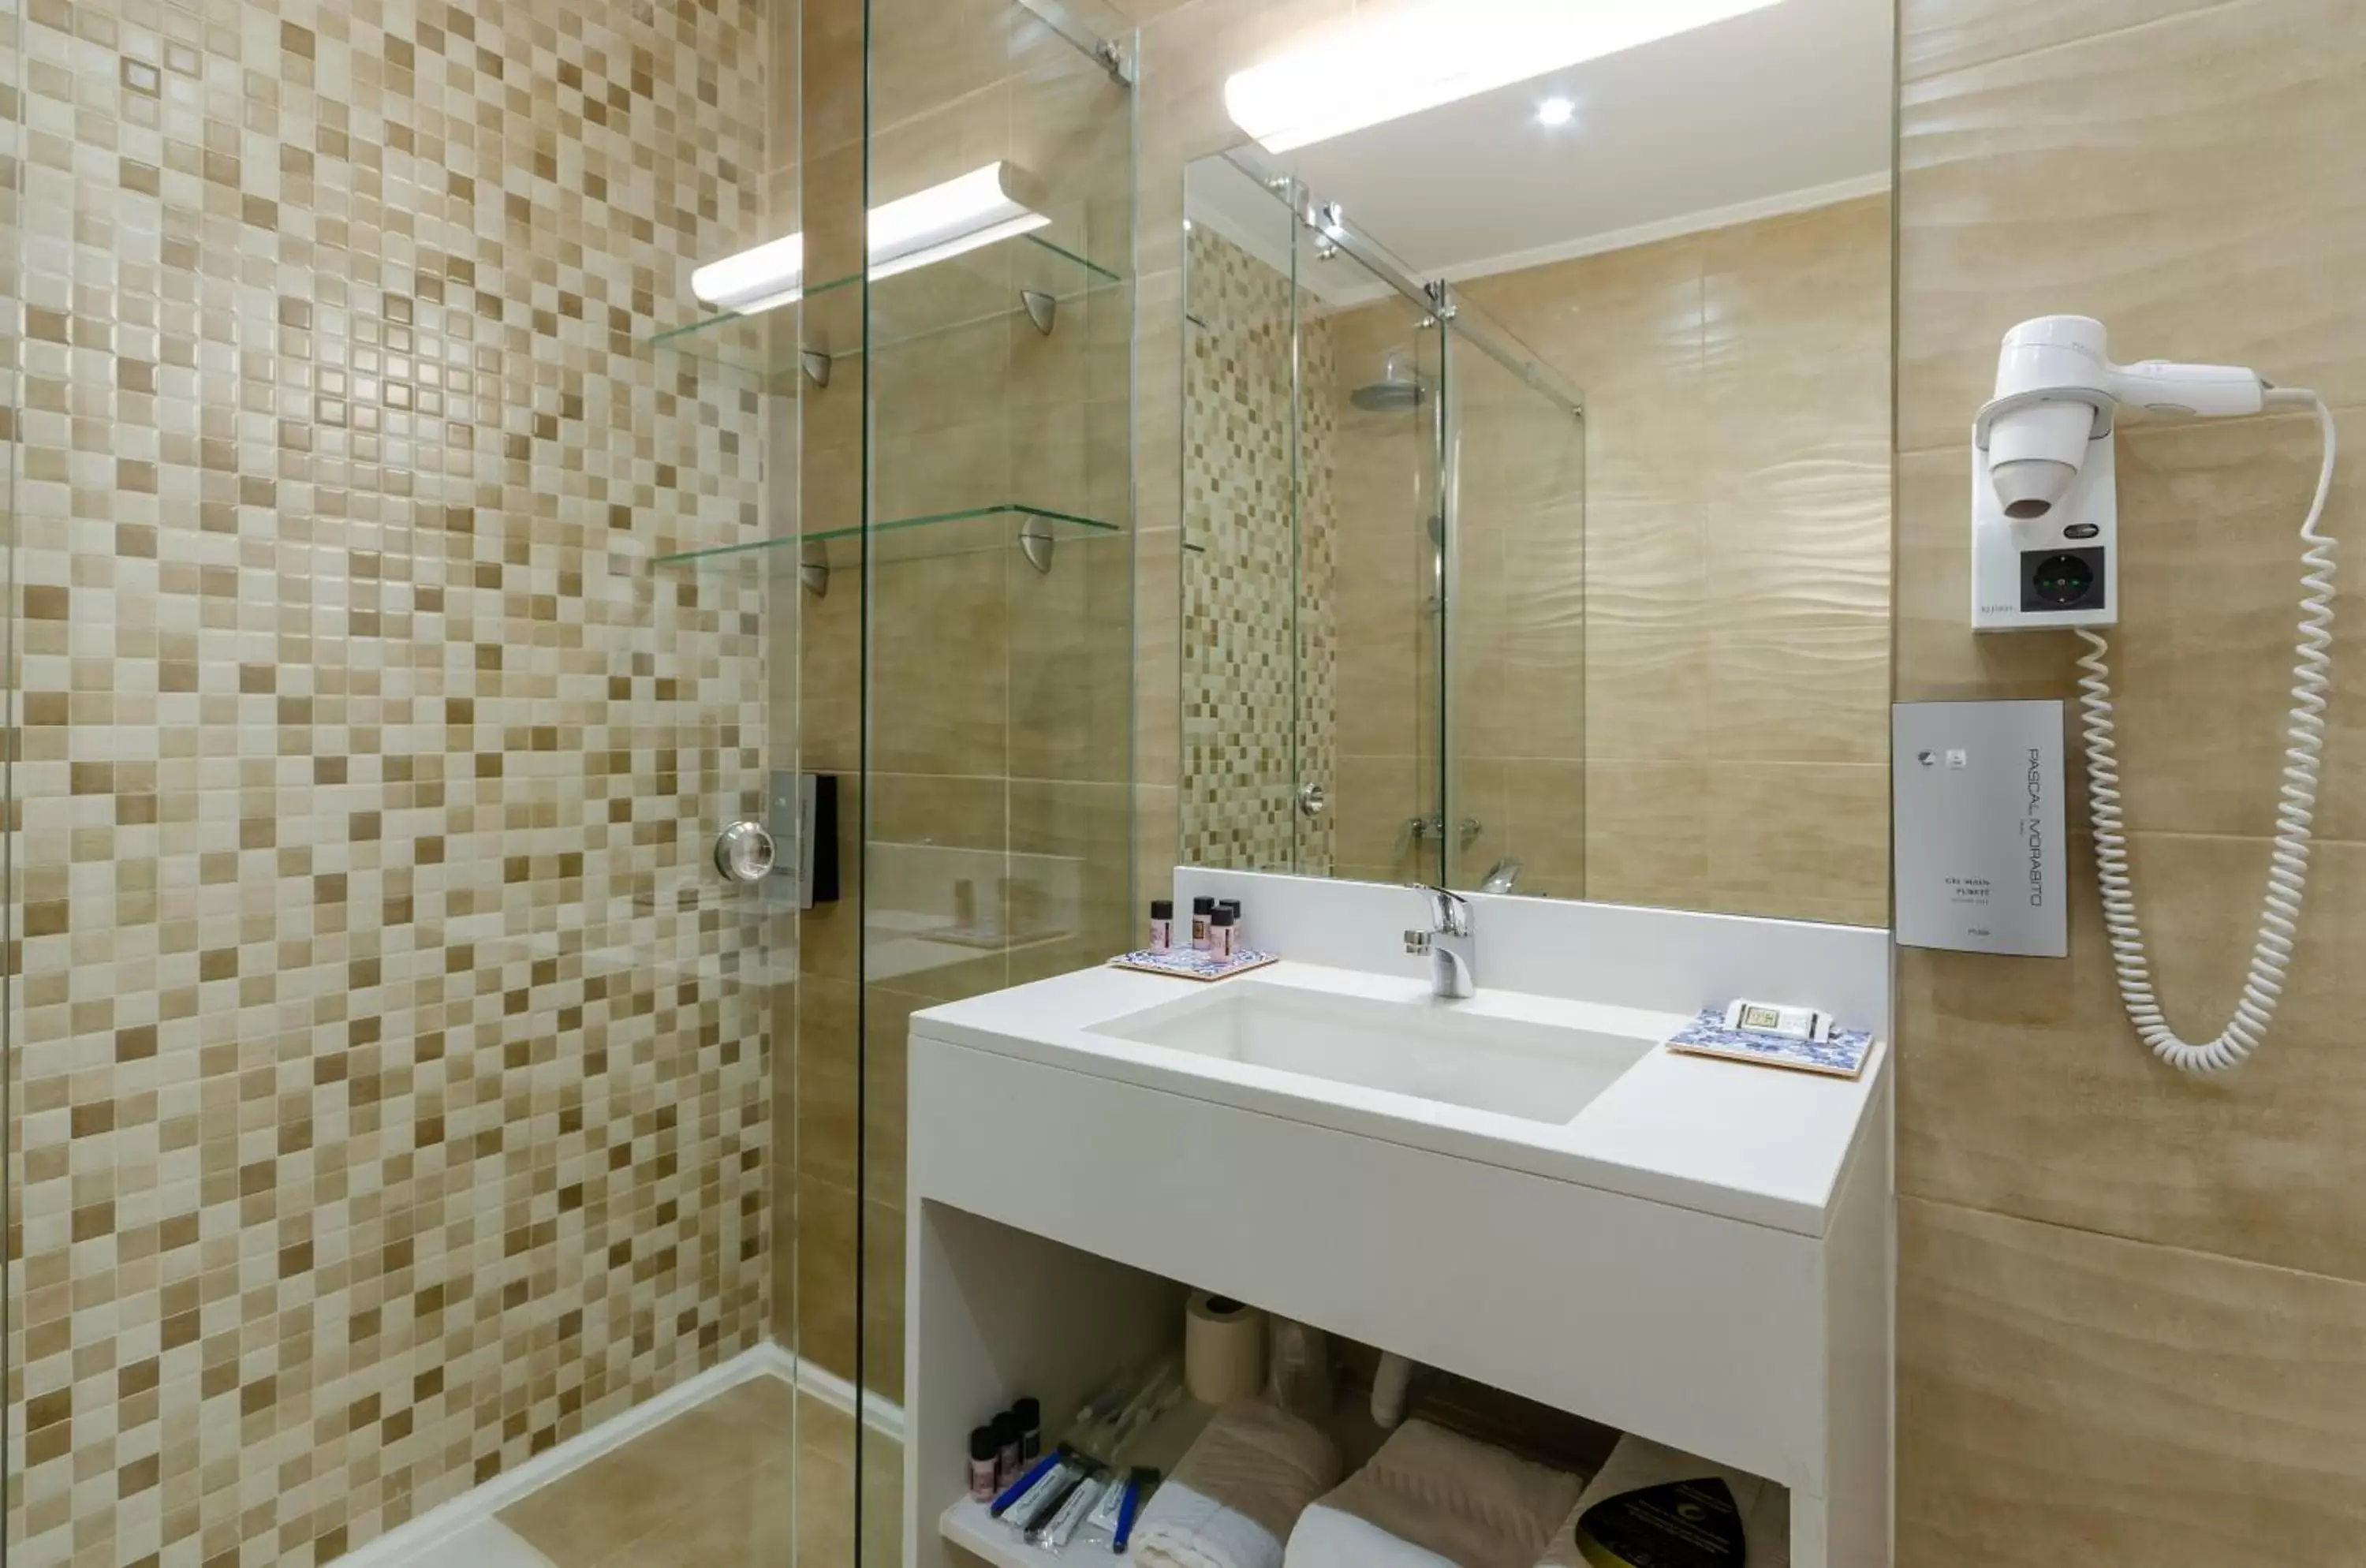 Bathroom in Hotel Borges Chiado